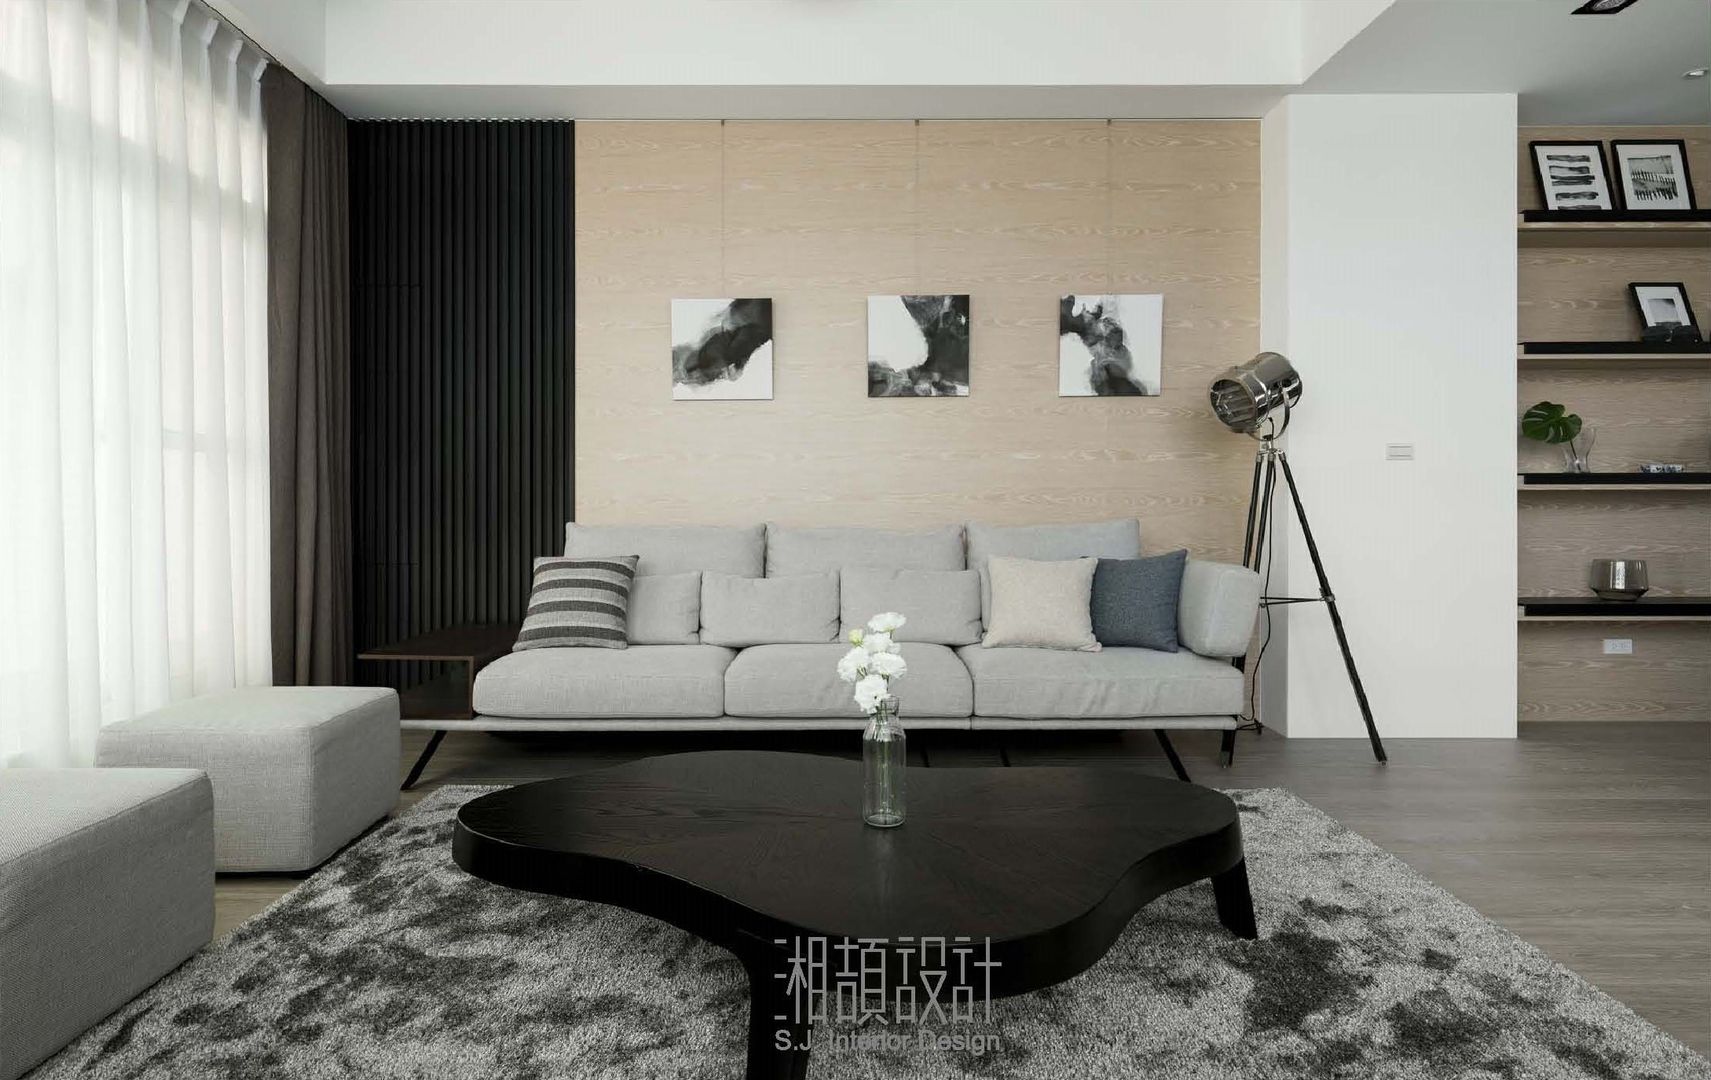 和風感十足的客廳風格 湘頡設計 客廳 木皮,禪,純白